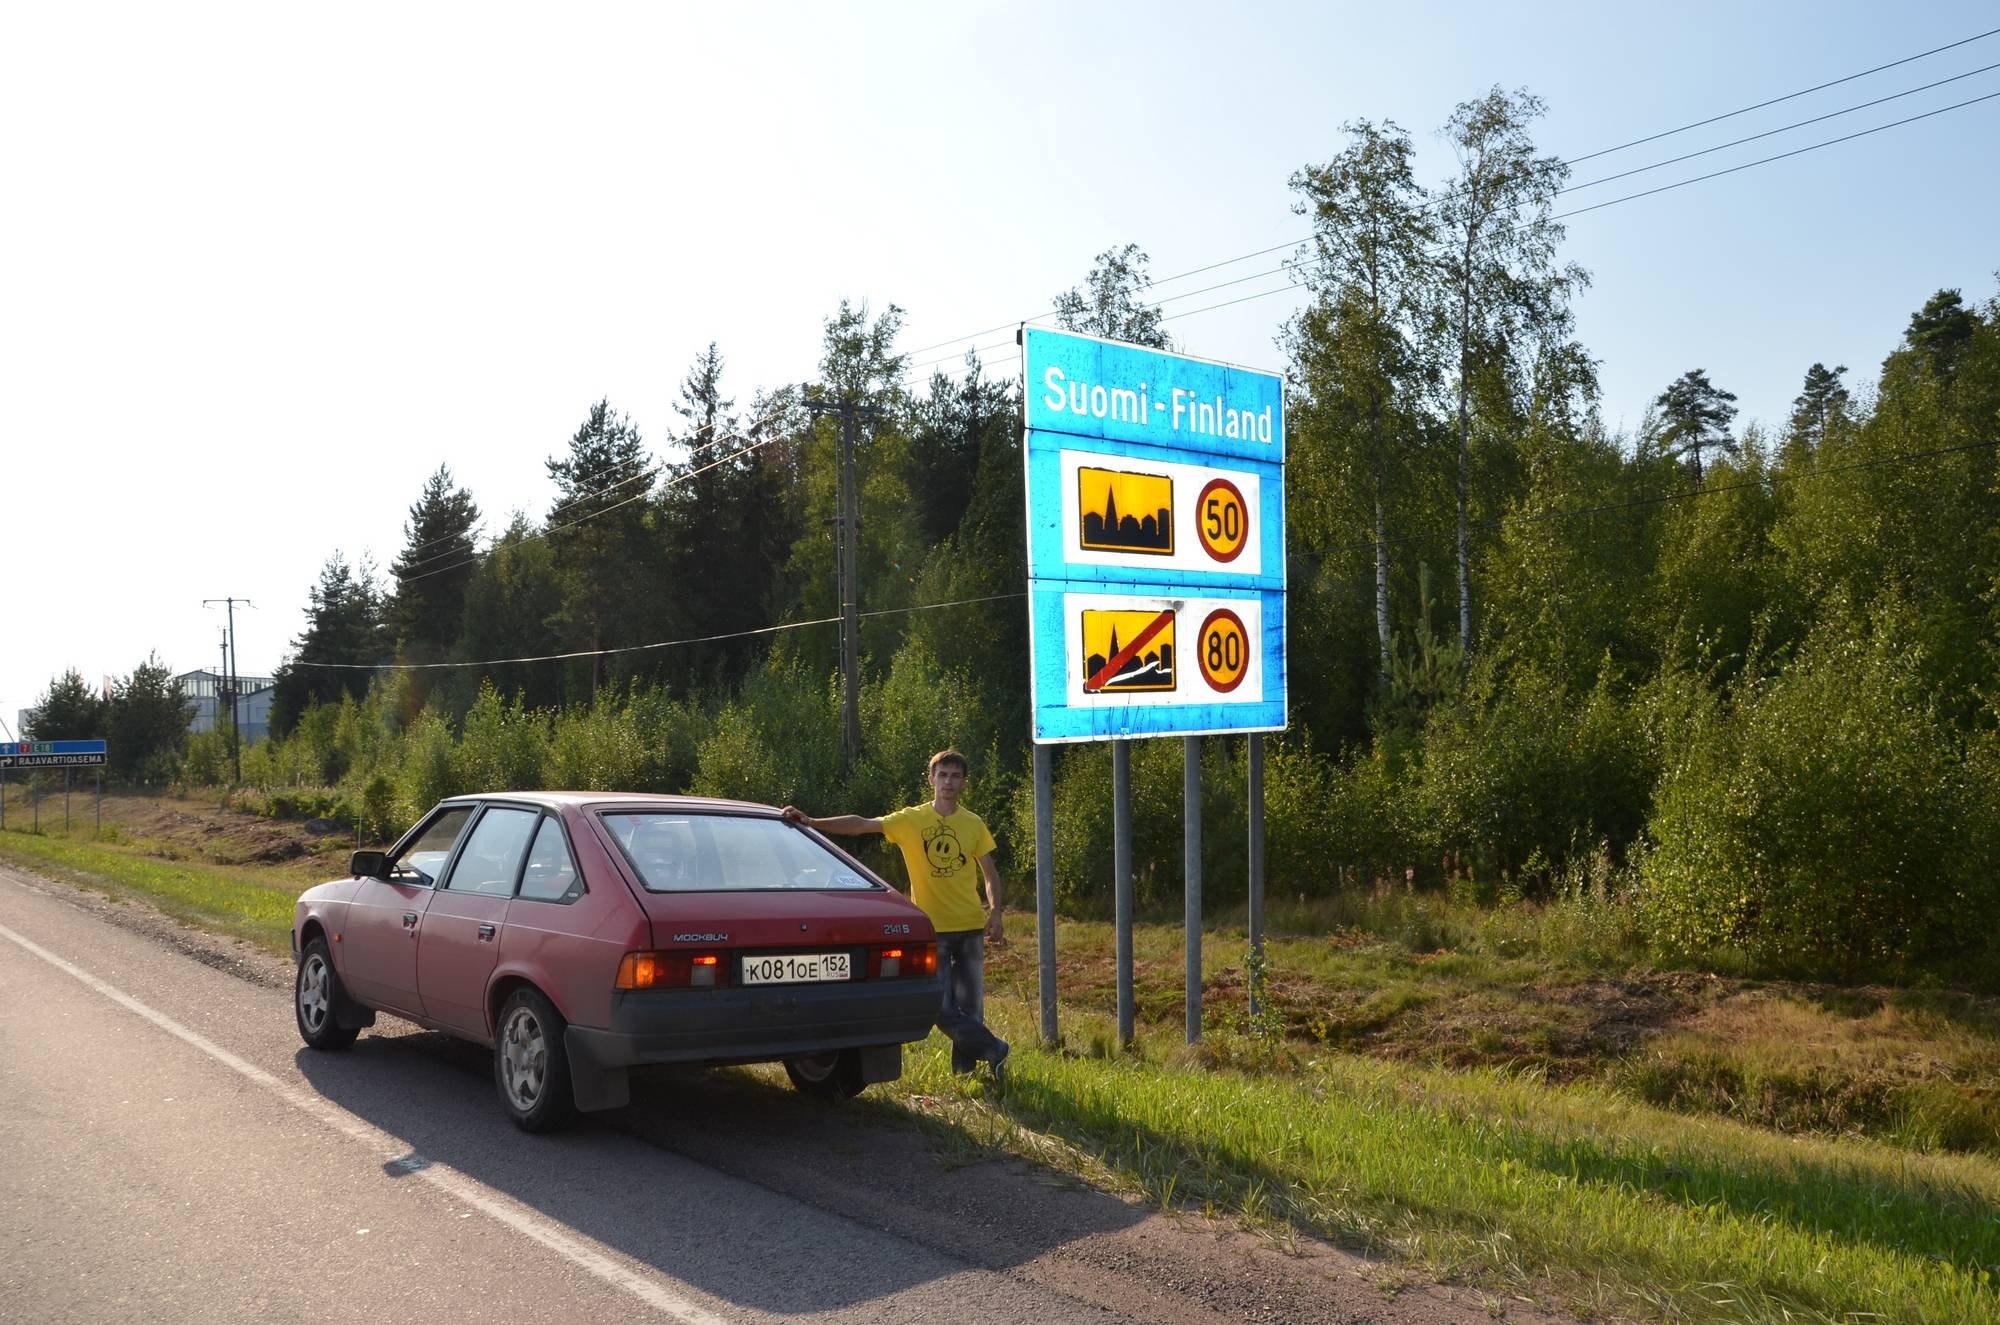 Путешествие по финляндии на машине: куда съездить и что посмотреть - gkd.ru